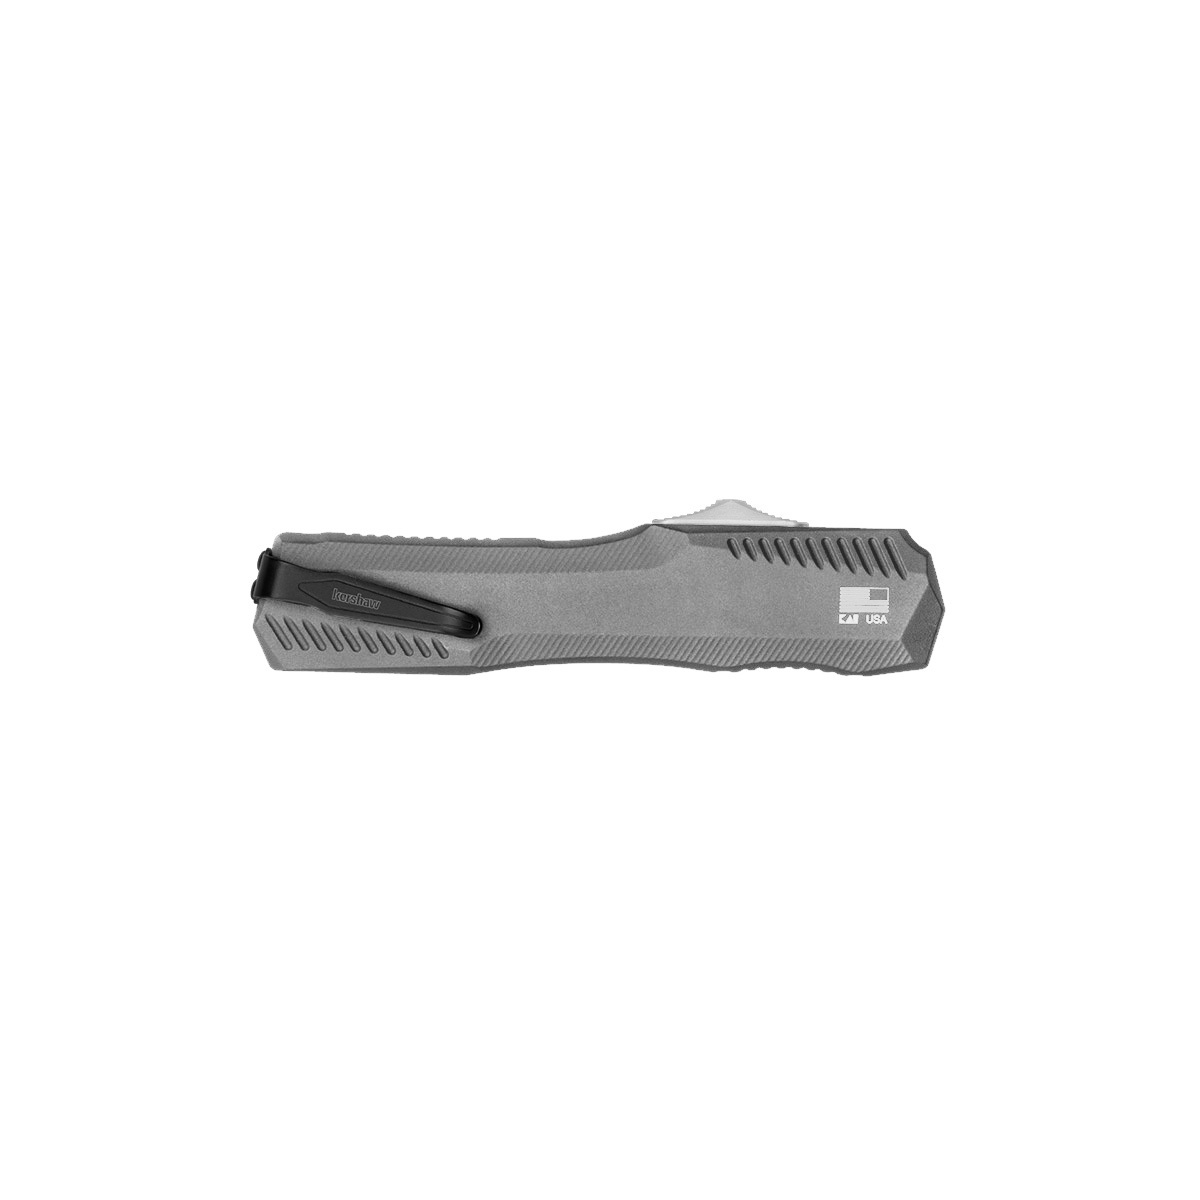 Автоматический нож Kershaw Livewire 9000GRY, сталь Magnacut, рукоять алюминий, серый - фото 2